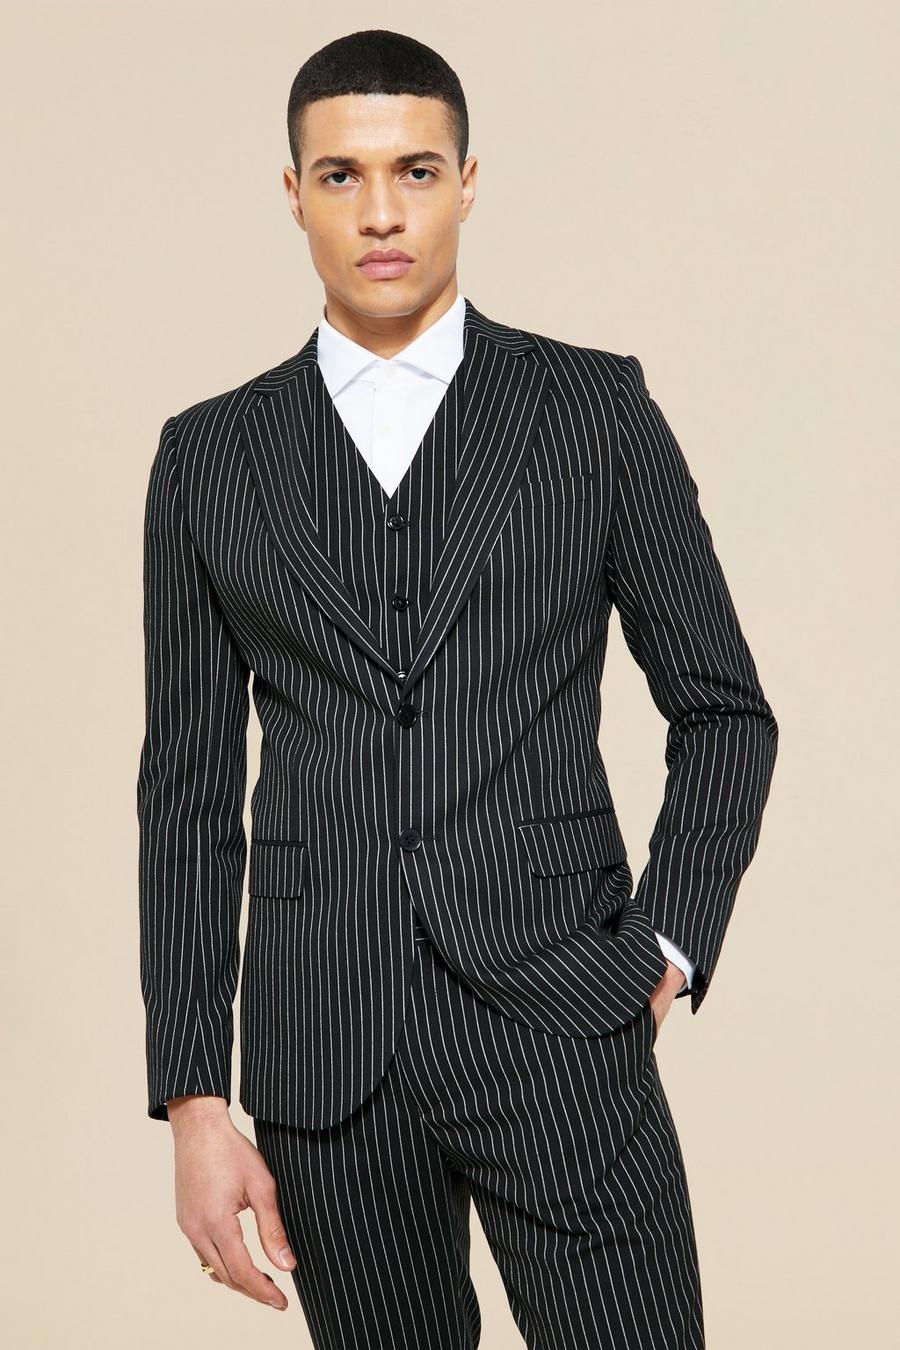 https://media.boohoo.com/i/boohoo/bmm04173_black_xl/male-black--skinny-single-breasted-pinstripe-suit-jacket/?w=900&qlt=default&fmt.jp2.qlt=70&fmt=auto&sm=fit